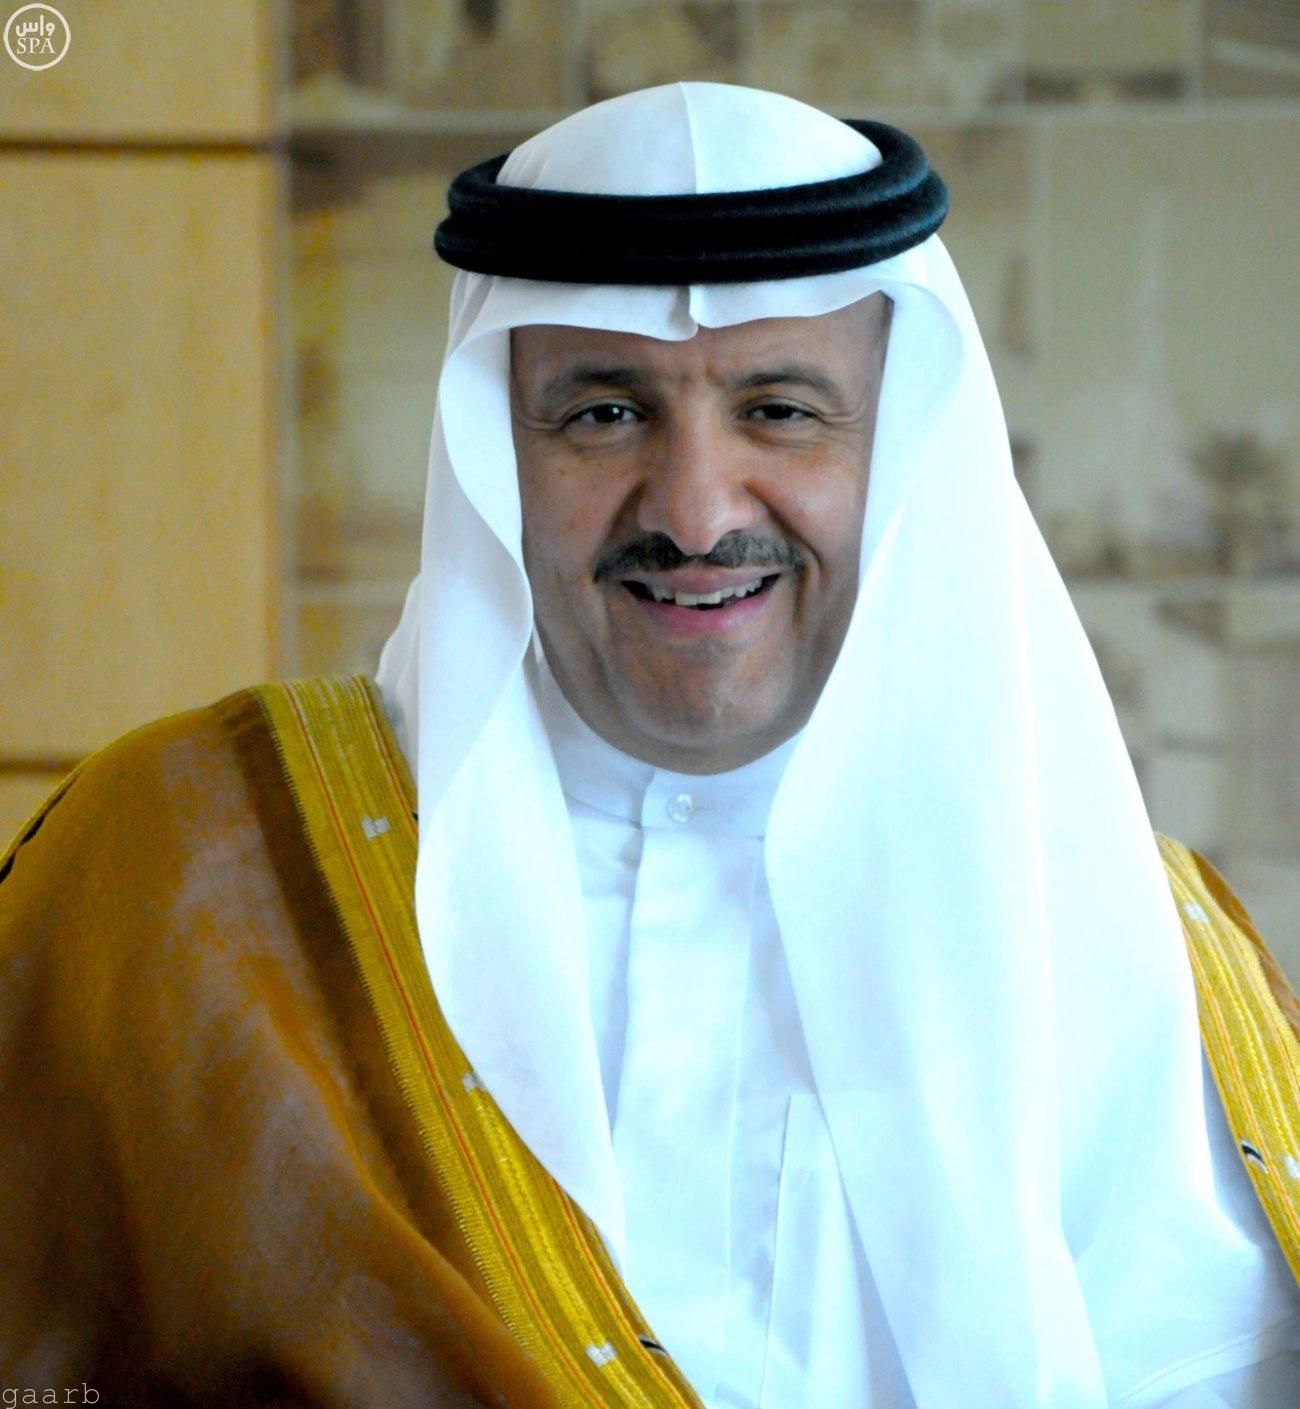 الأمير سلطان بن سلمان يعتمد إعادة تشكيل المجموعة الاستشارية للبرنامج الوطني للمعارض والمؤتمرات